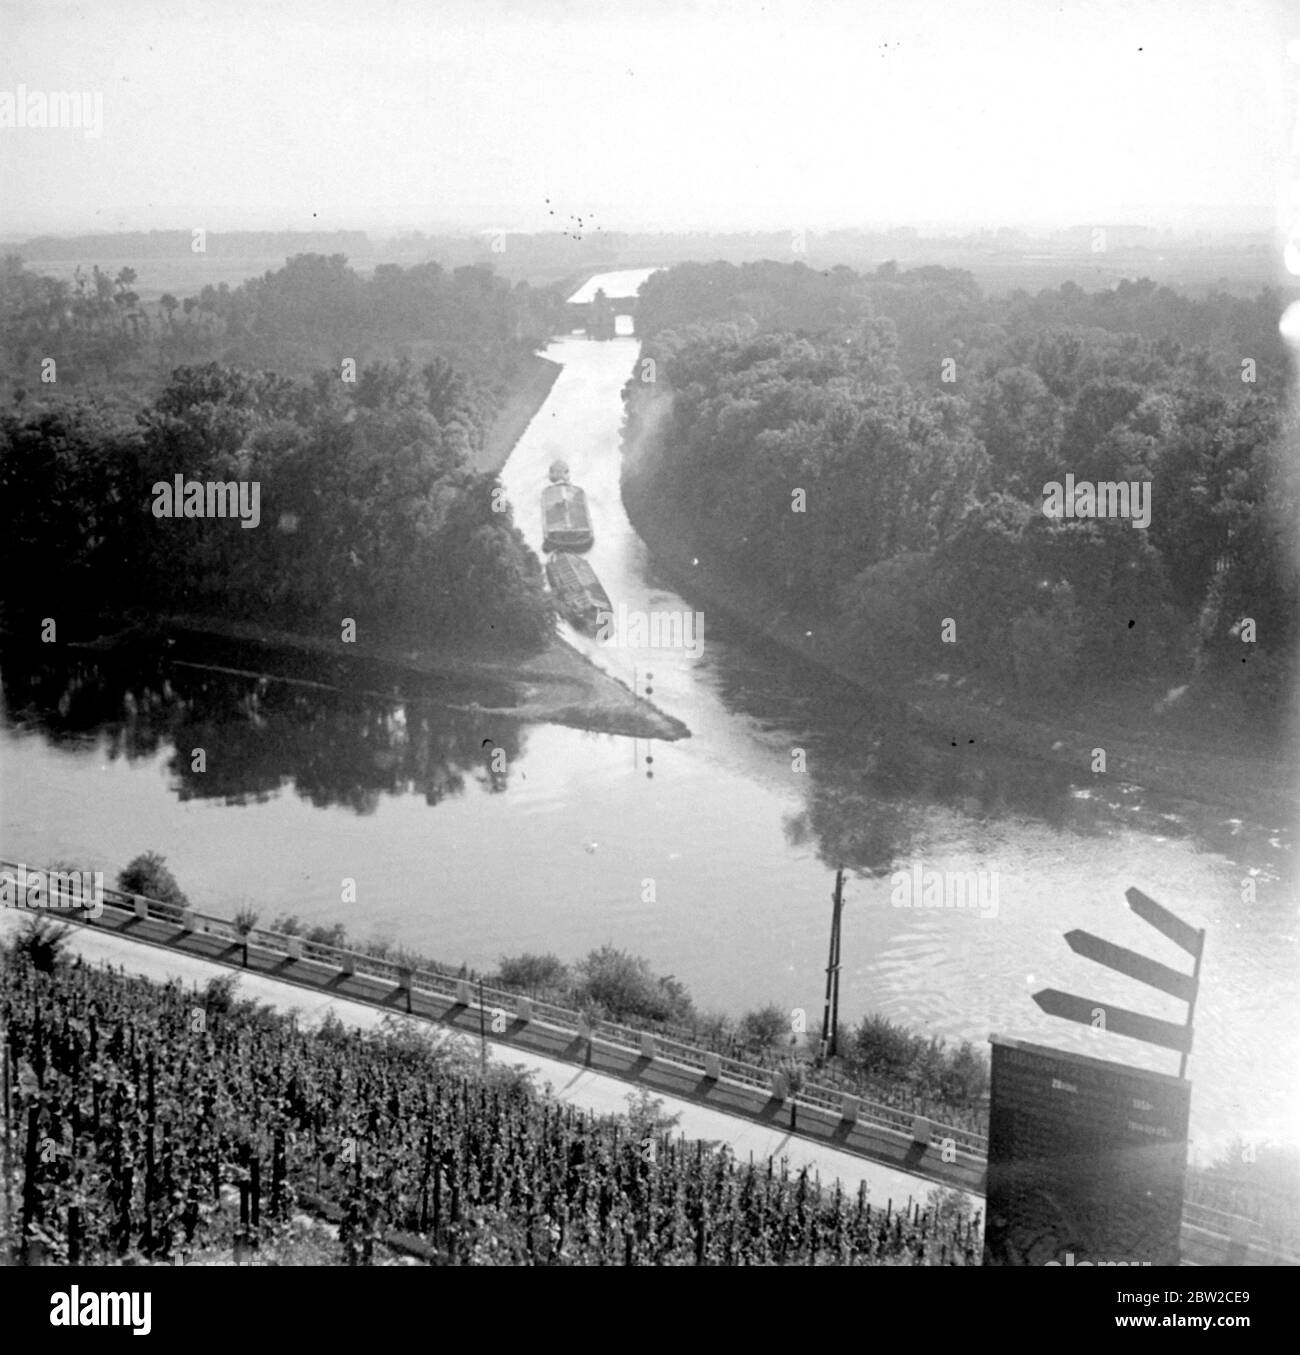 Kreuzung der Moldau (Moldau) und Labe (Elbe) Flüsse in der Nähe von Melnik, Tschechoslowakei. [Kein Datum] Stockfoto